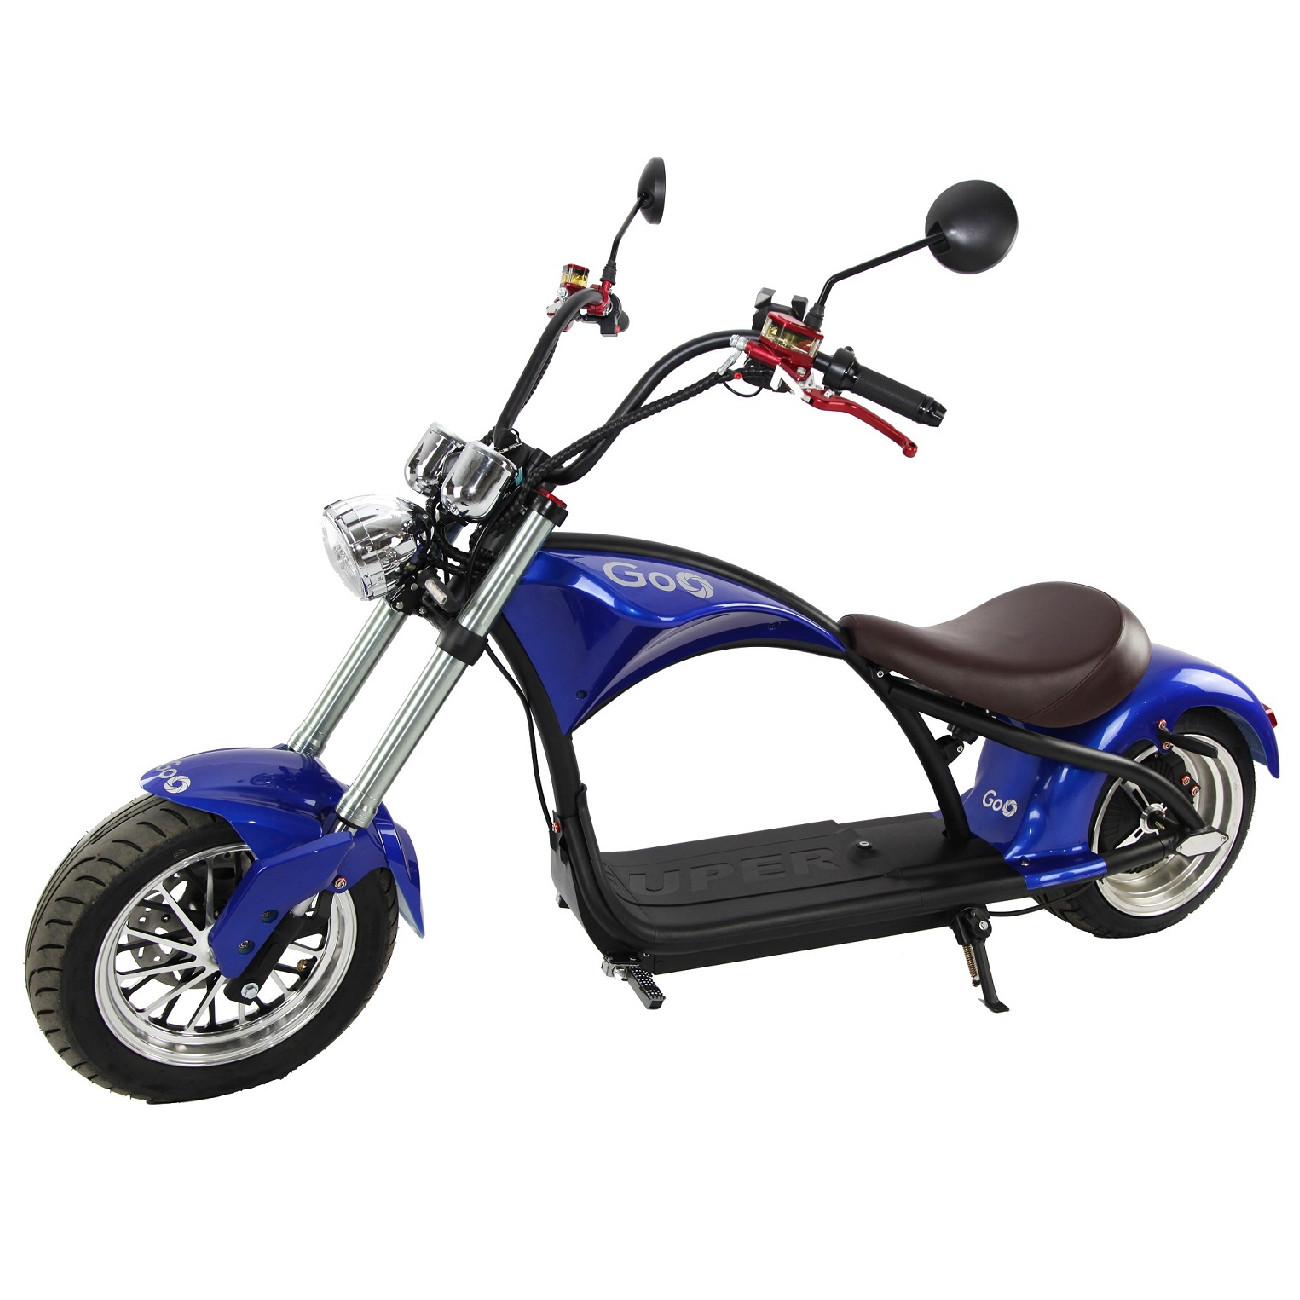 Kit Carenagem X14 Super completa para scooter eletrica